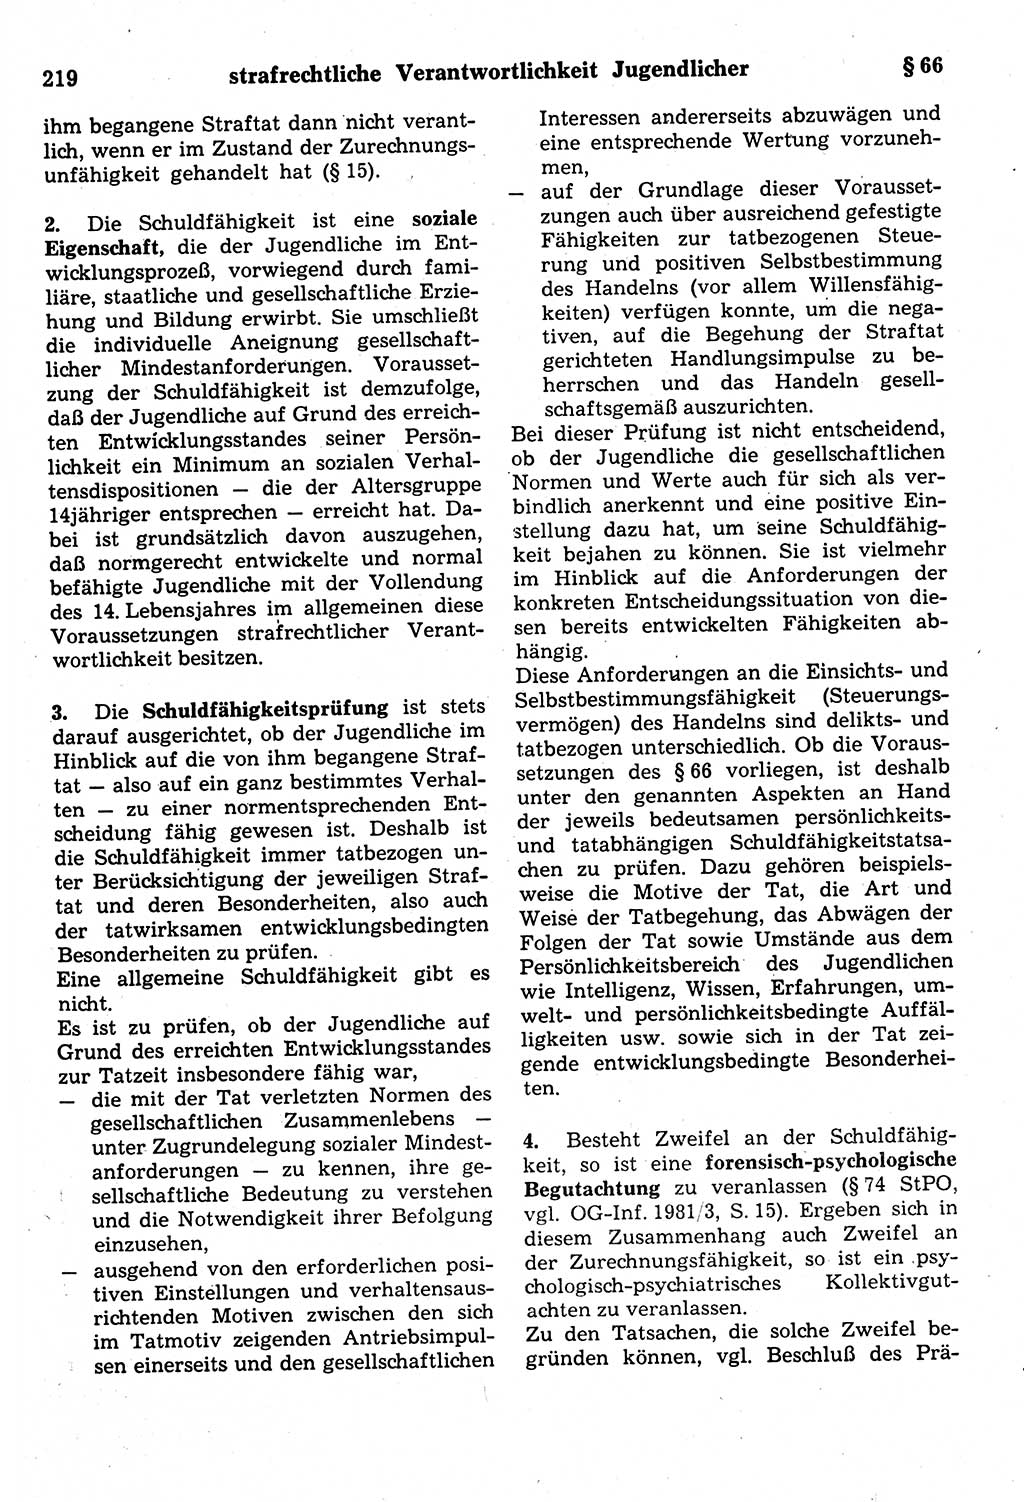 Strafrecht der Deutschen Demokratischen Republik (DDR), Kommentar zum Strafgesetzbuch (StGB) 1987, Seite 219 (Strafr. DDR Komm. StGB 1987, S. 219)